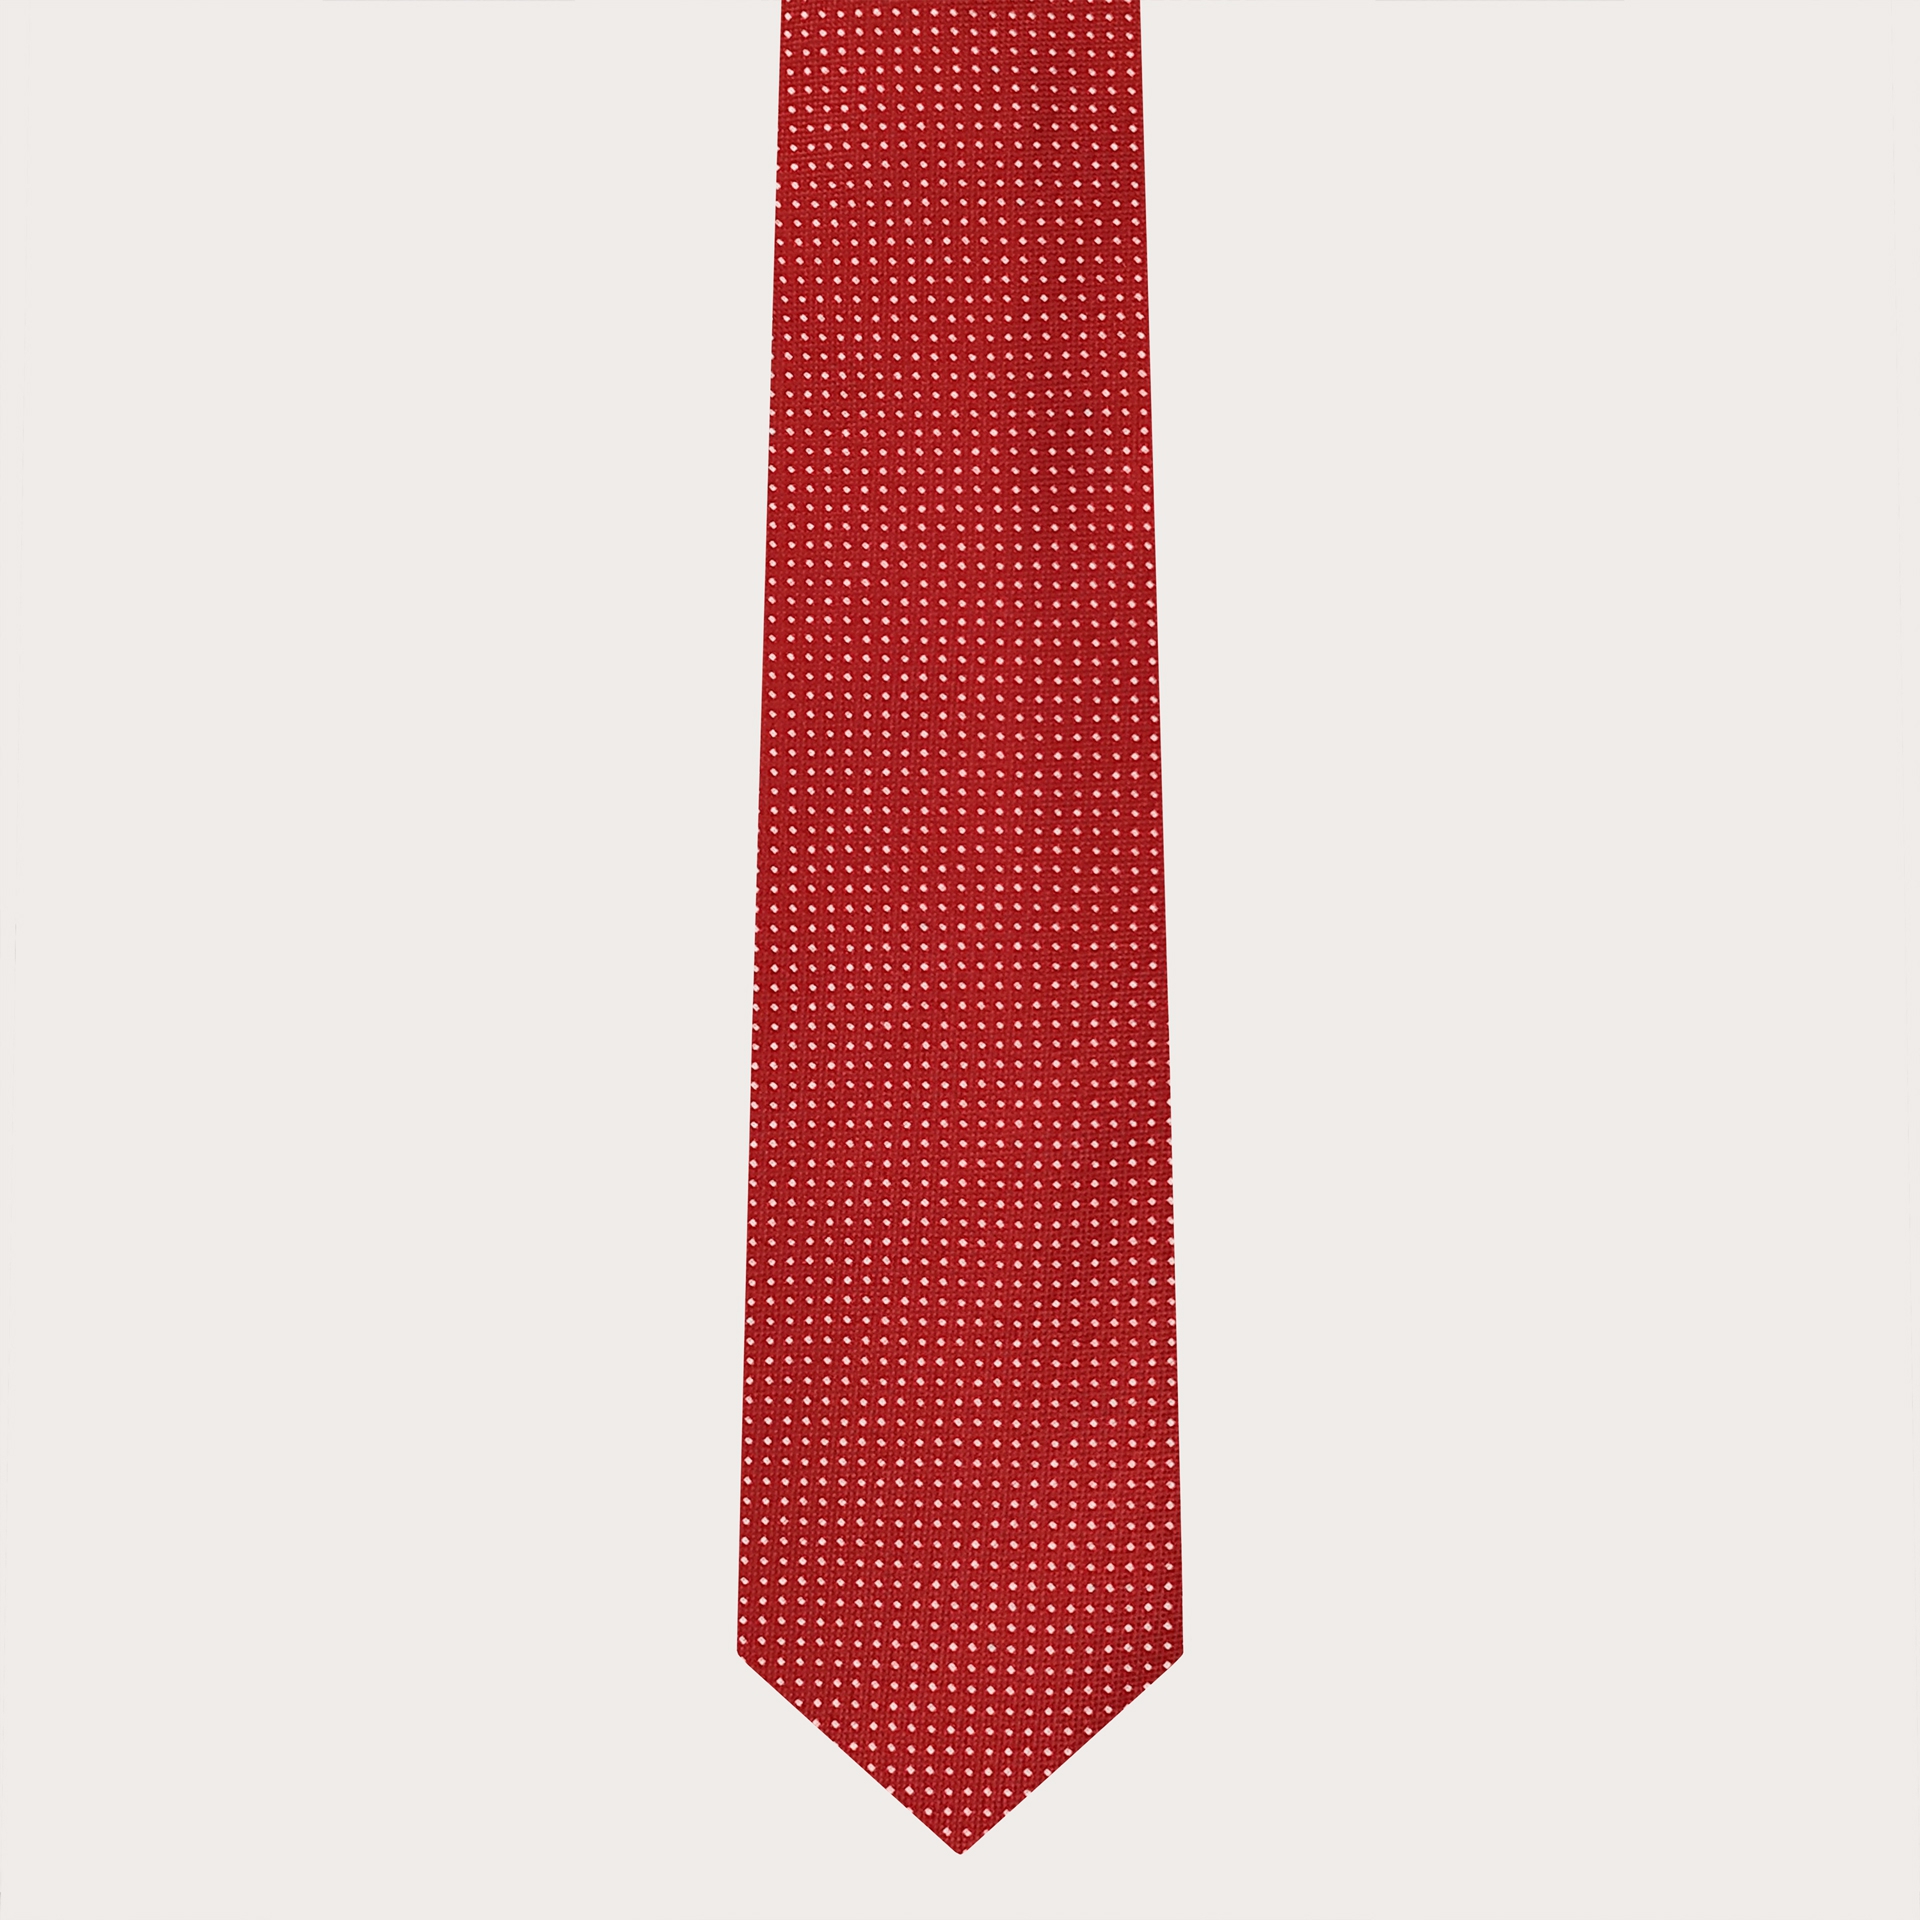 Brucle cravate rouge à pois en soie jacquard